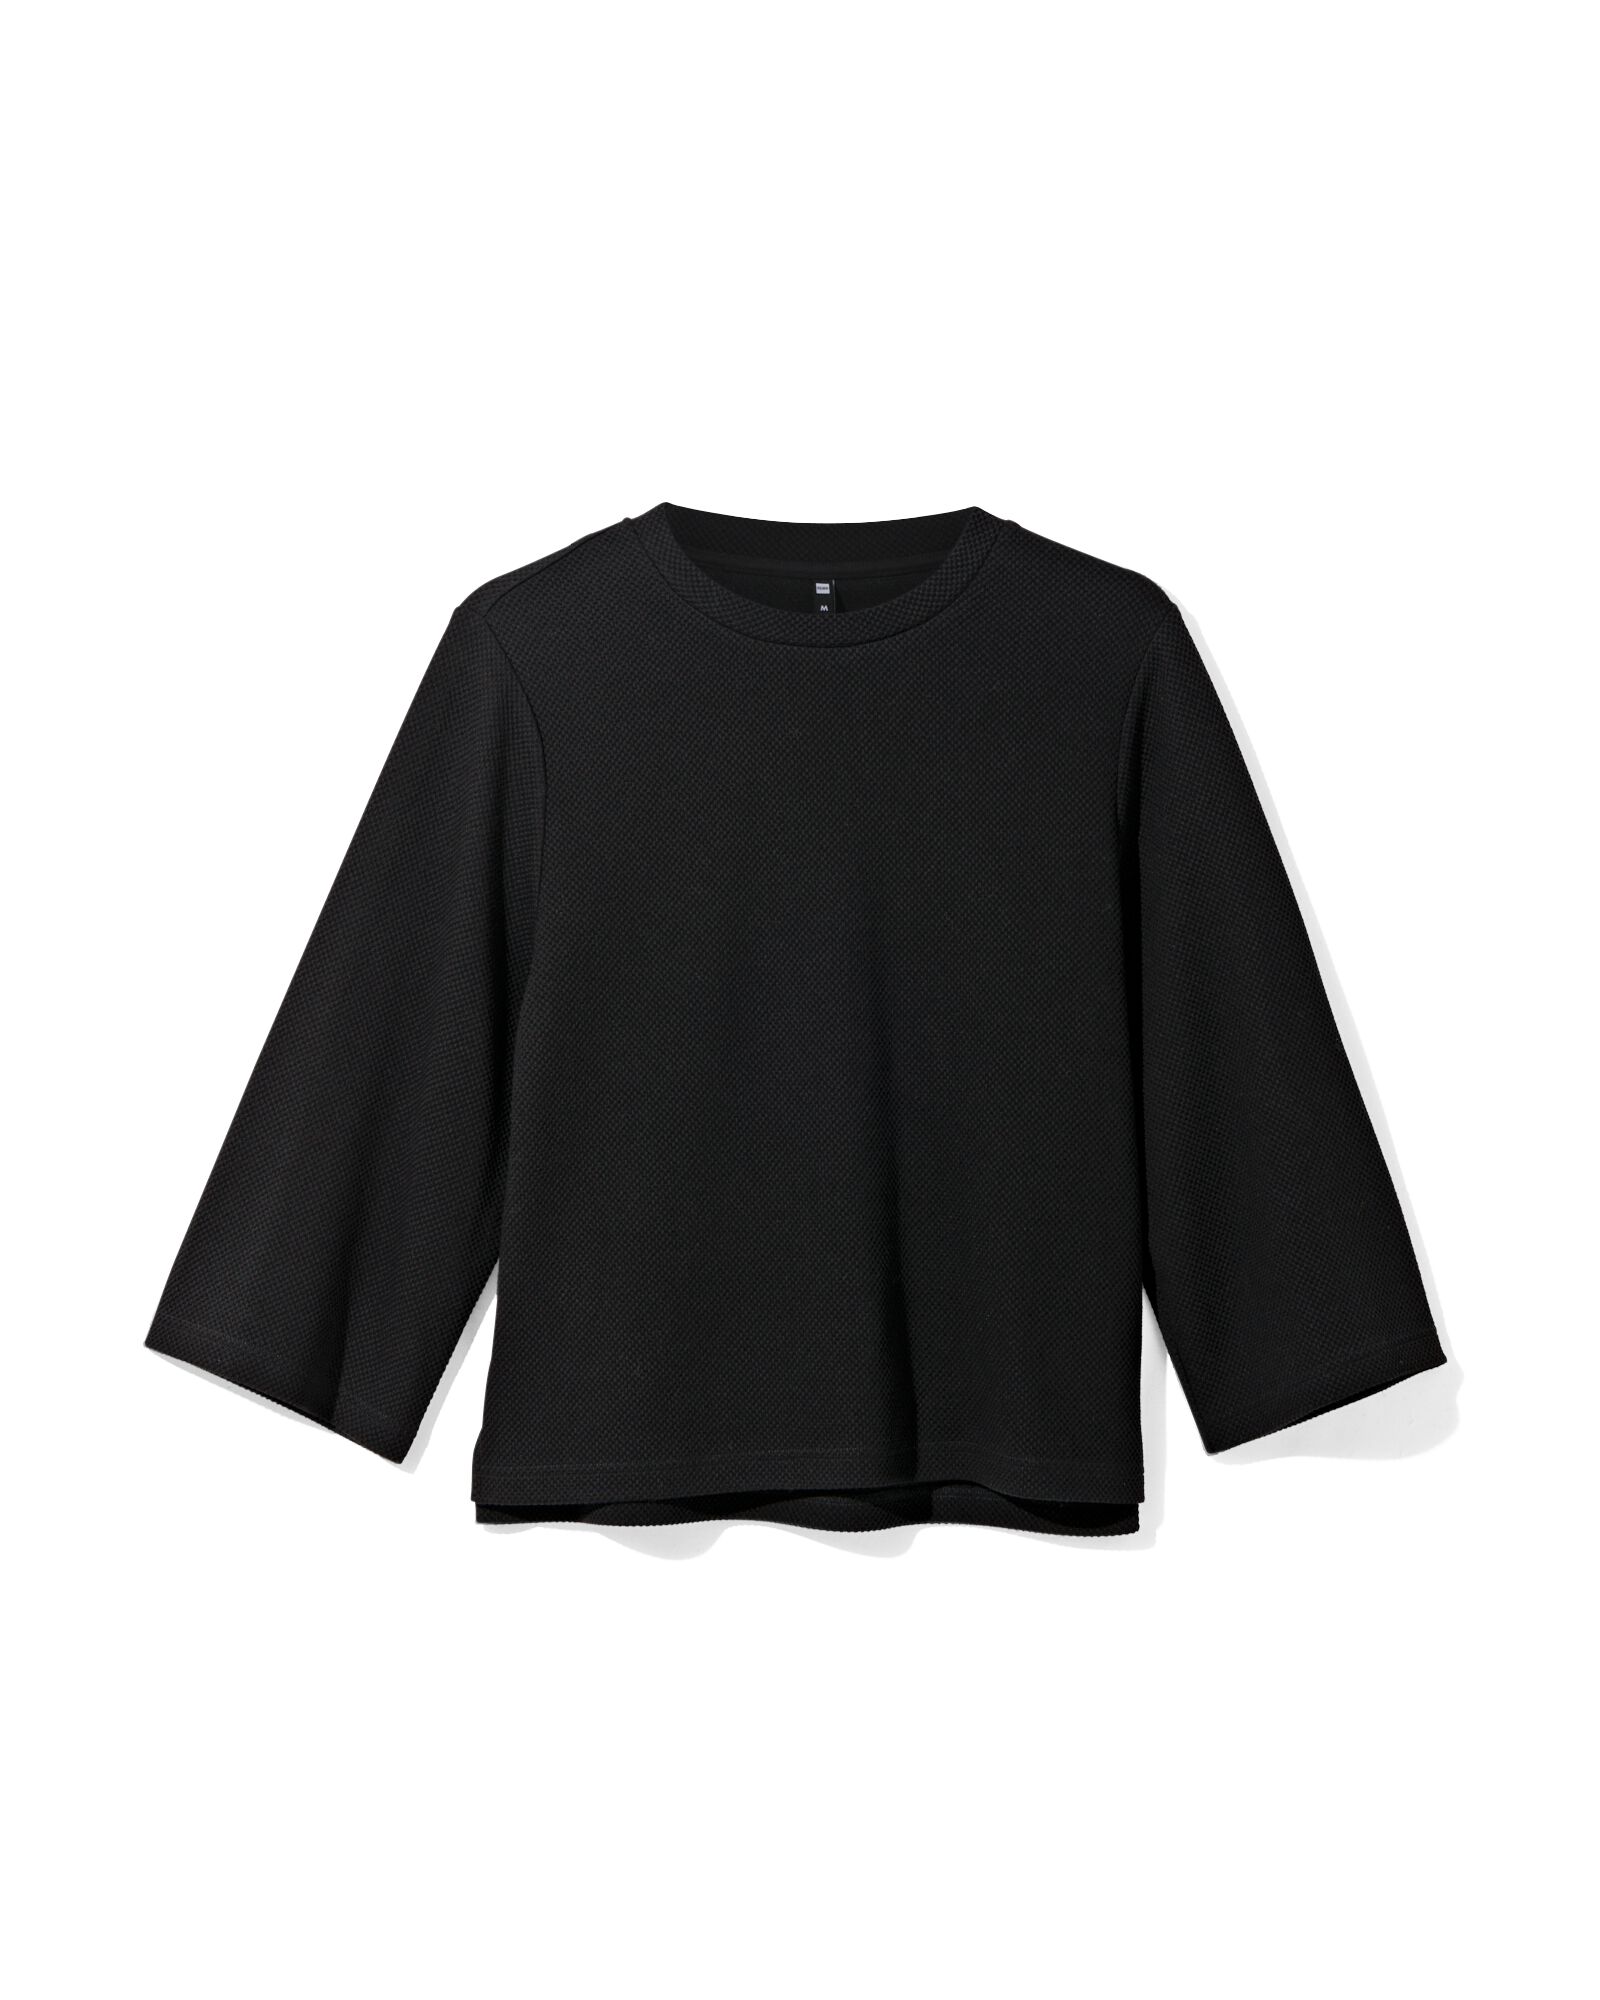 dames shirt Kacey met structuur zwart S - 36298051 - HEMA